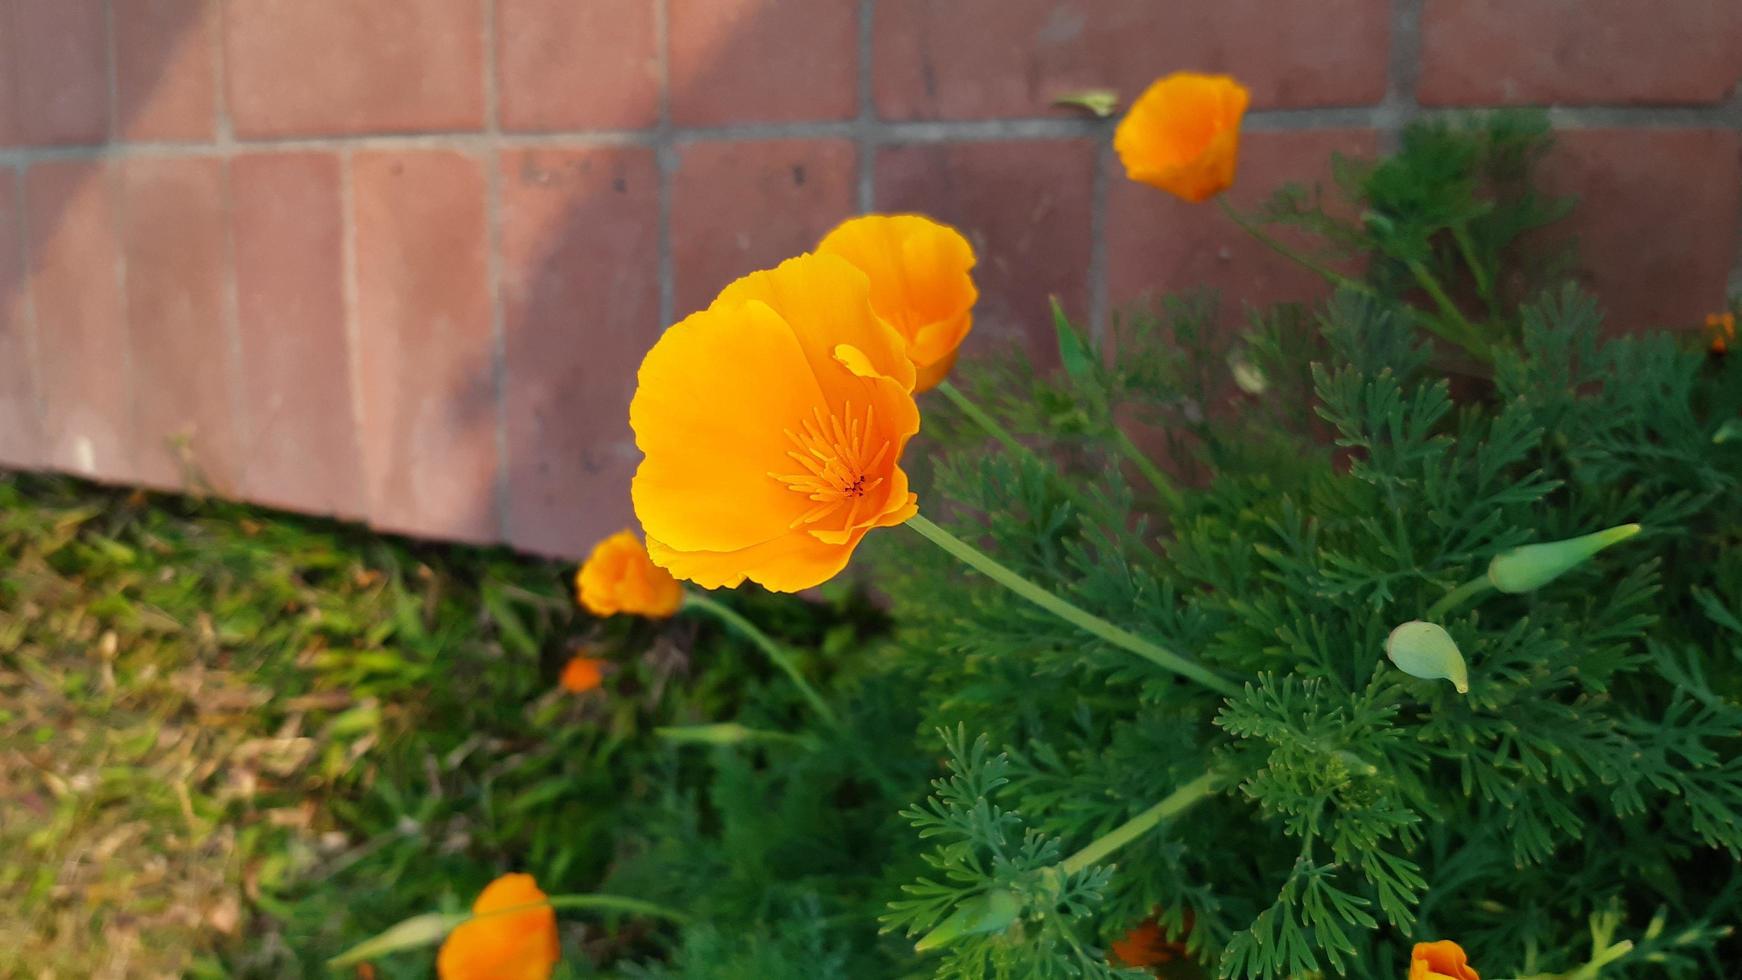 eschscholzia californica, kalifornisk vallmo, gyllene vallmo, kaliforniskt solljus eller en kopp guld, vårblommande blomma. foto